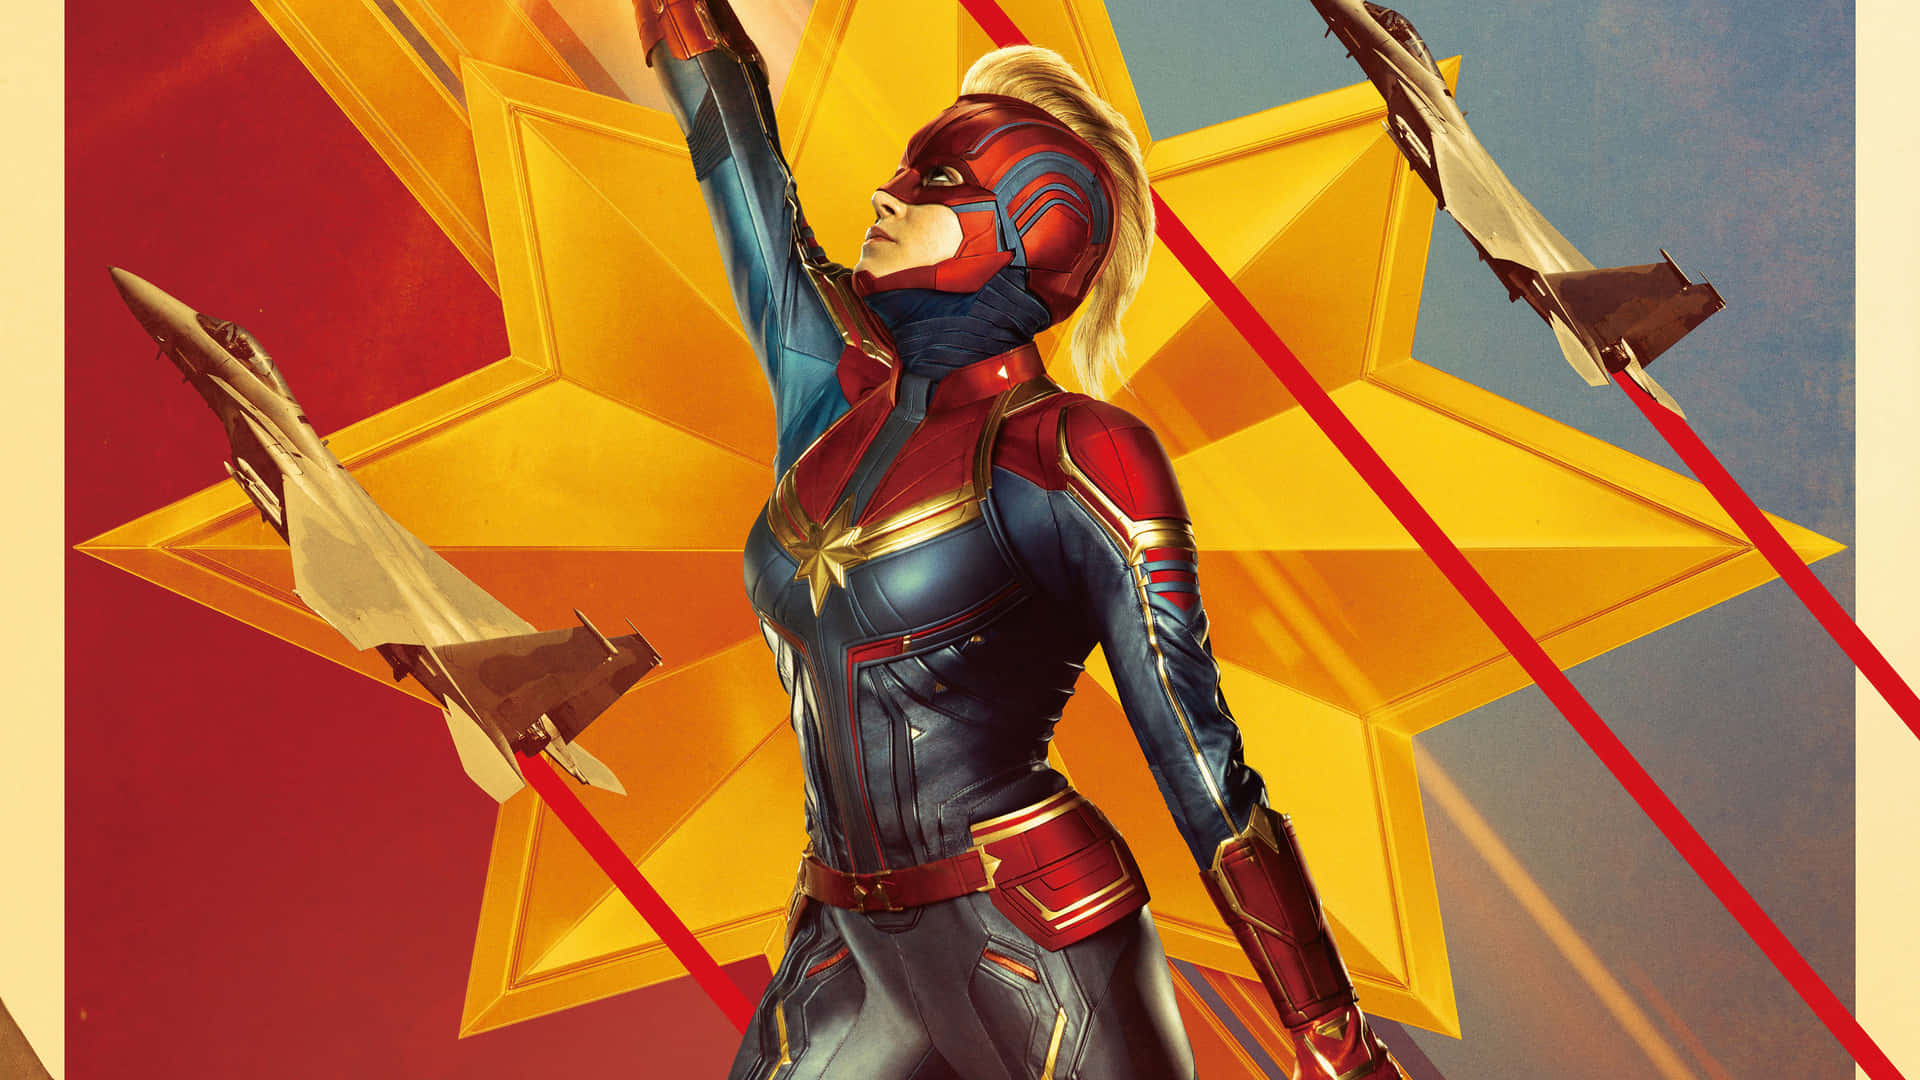 Preparatia Salvare Il Mondo Con Il Wallpaper Di Captain Marvel Per Ipad. Sfondo